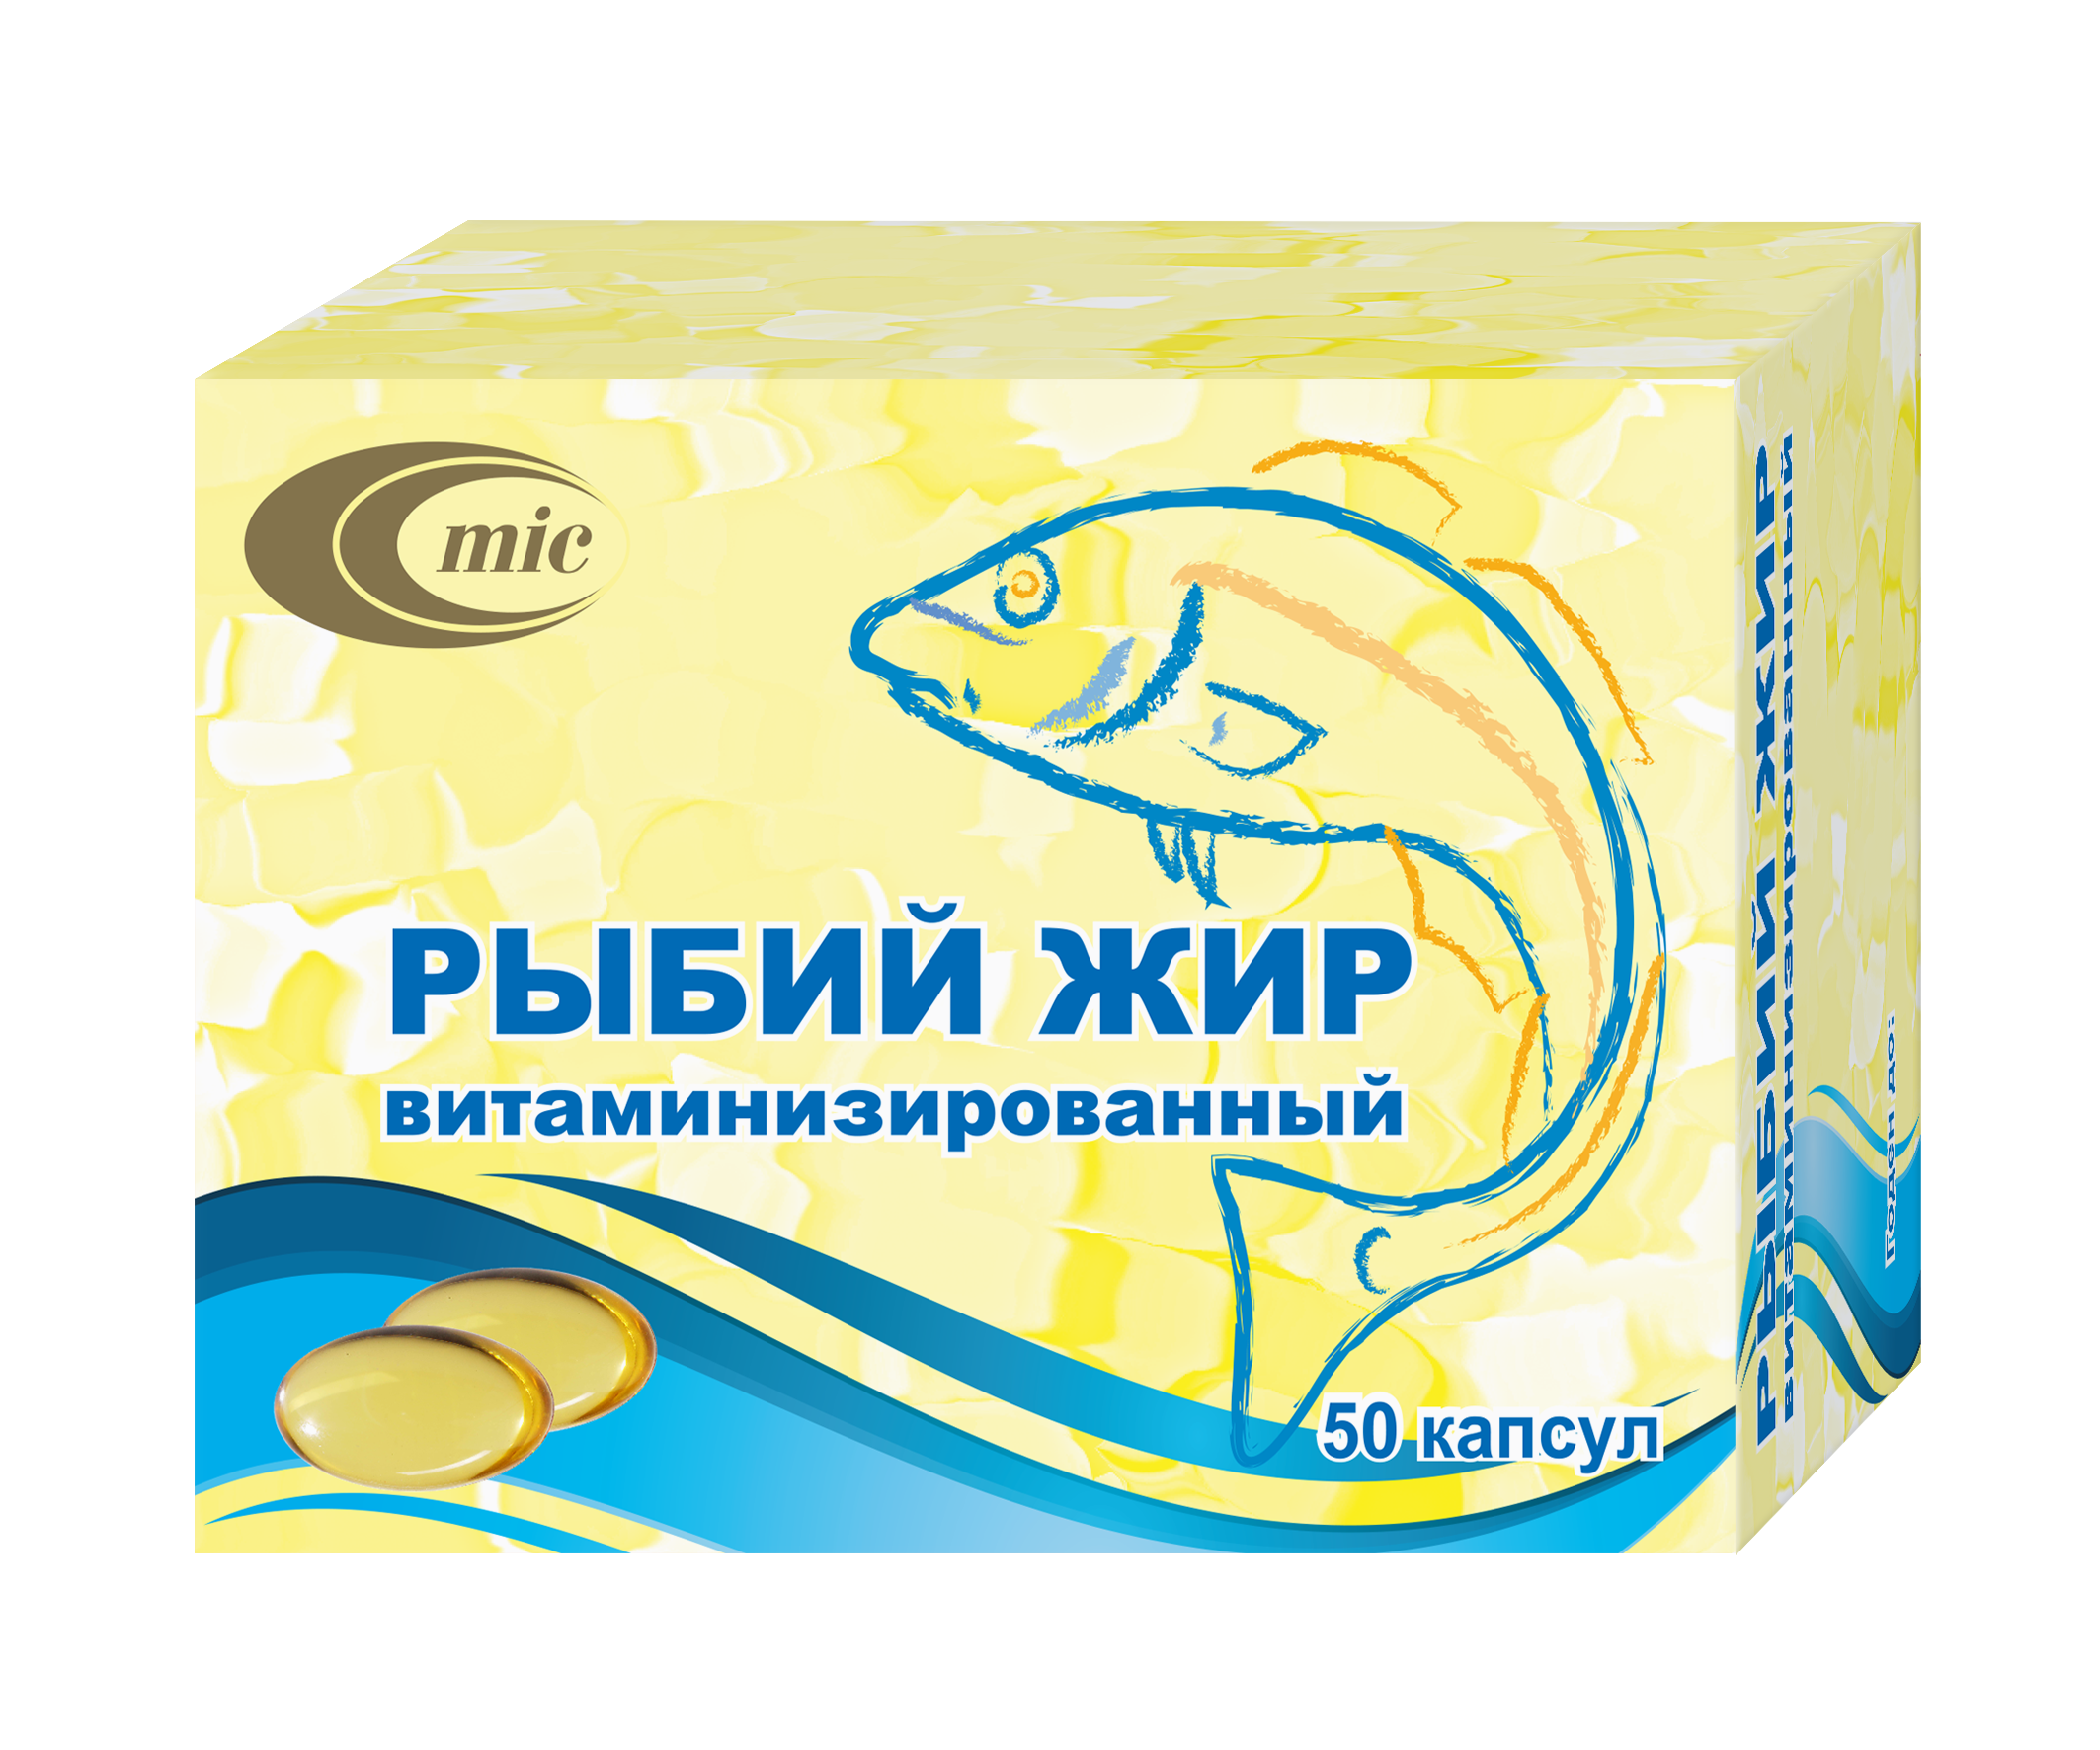 Рыбий жир очищенный масло. Рыбий жир тресковый витаминизированный. Лиси рыбий жир. Лекарства рыбные. Рыбий жир в капсулах цена в аптеках.